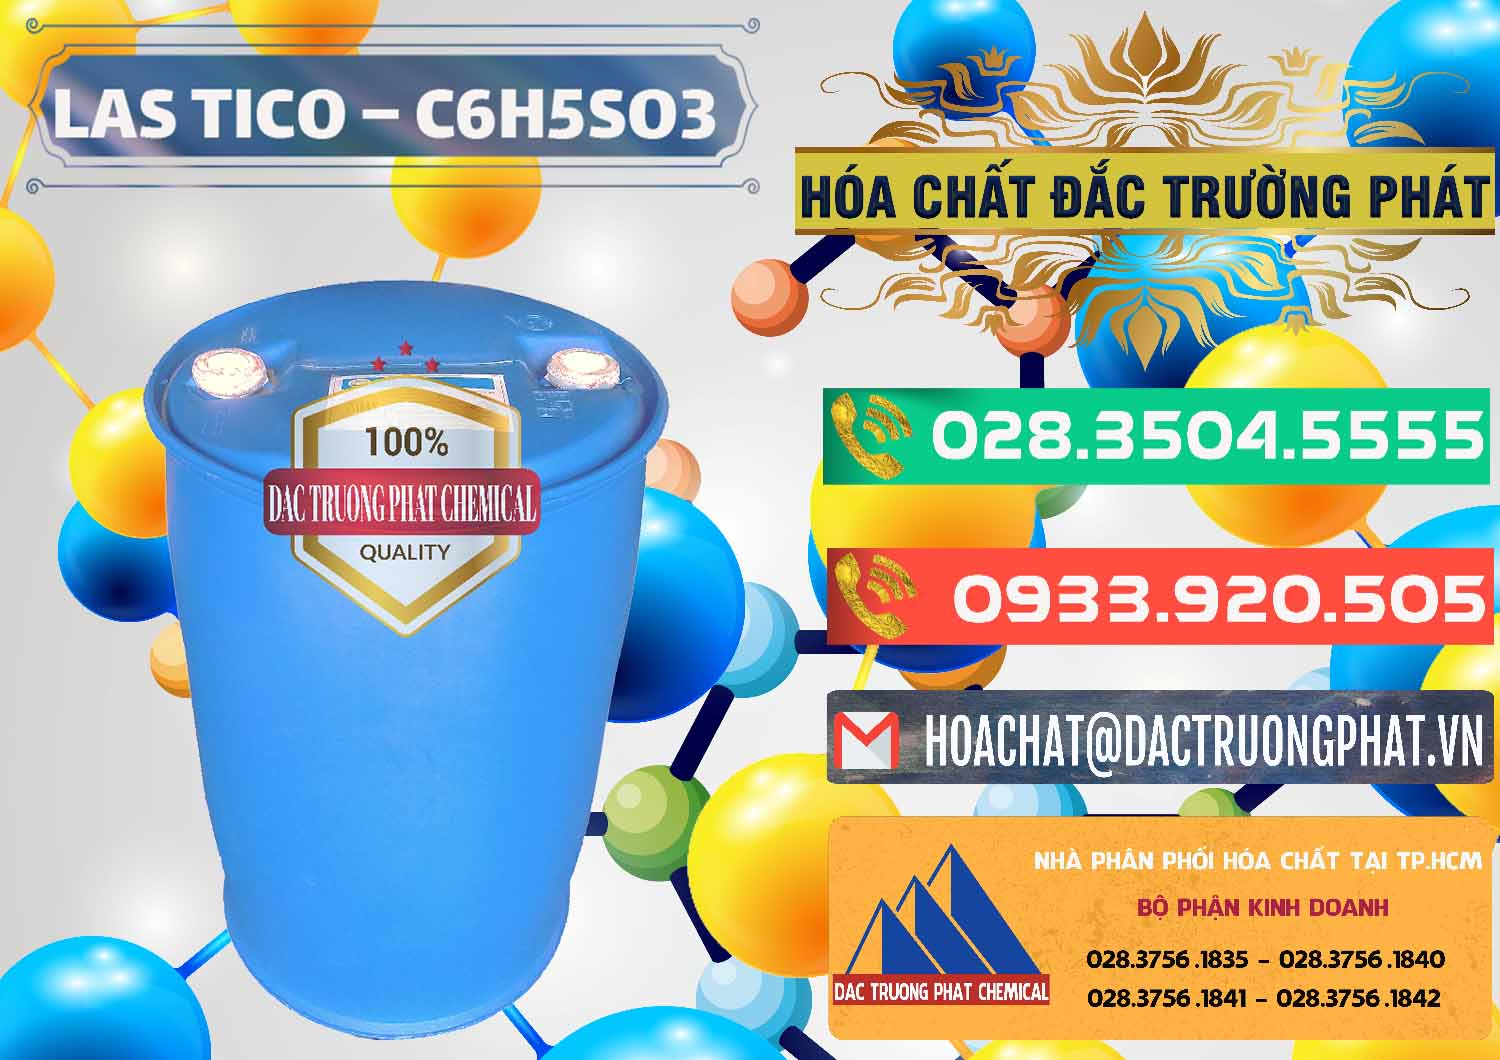 Cty chuyên kinh doanh & bán Chất tạo bọt Las H Tico Việt Nam - 0190 - Đơn vị chuyên cung ứng & phân phối hóa chất tại TP.HCM - congtyhoachat.com.vn